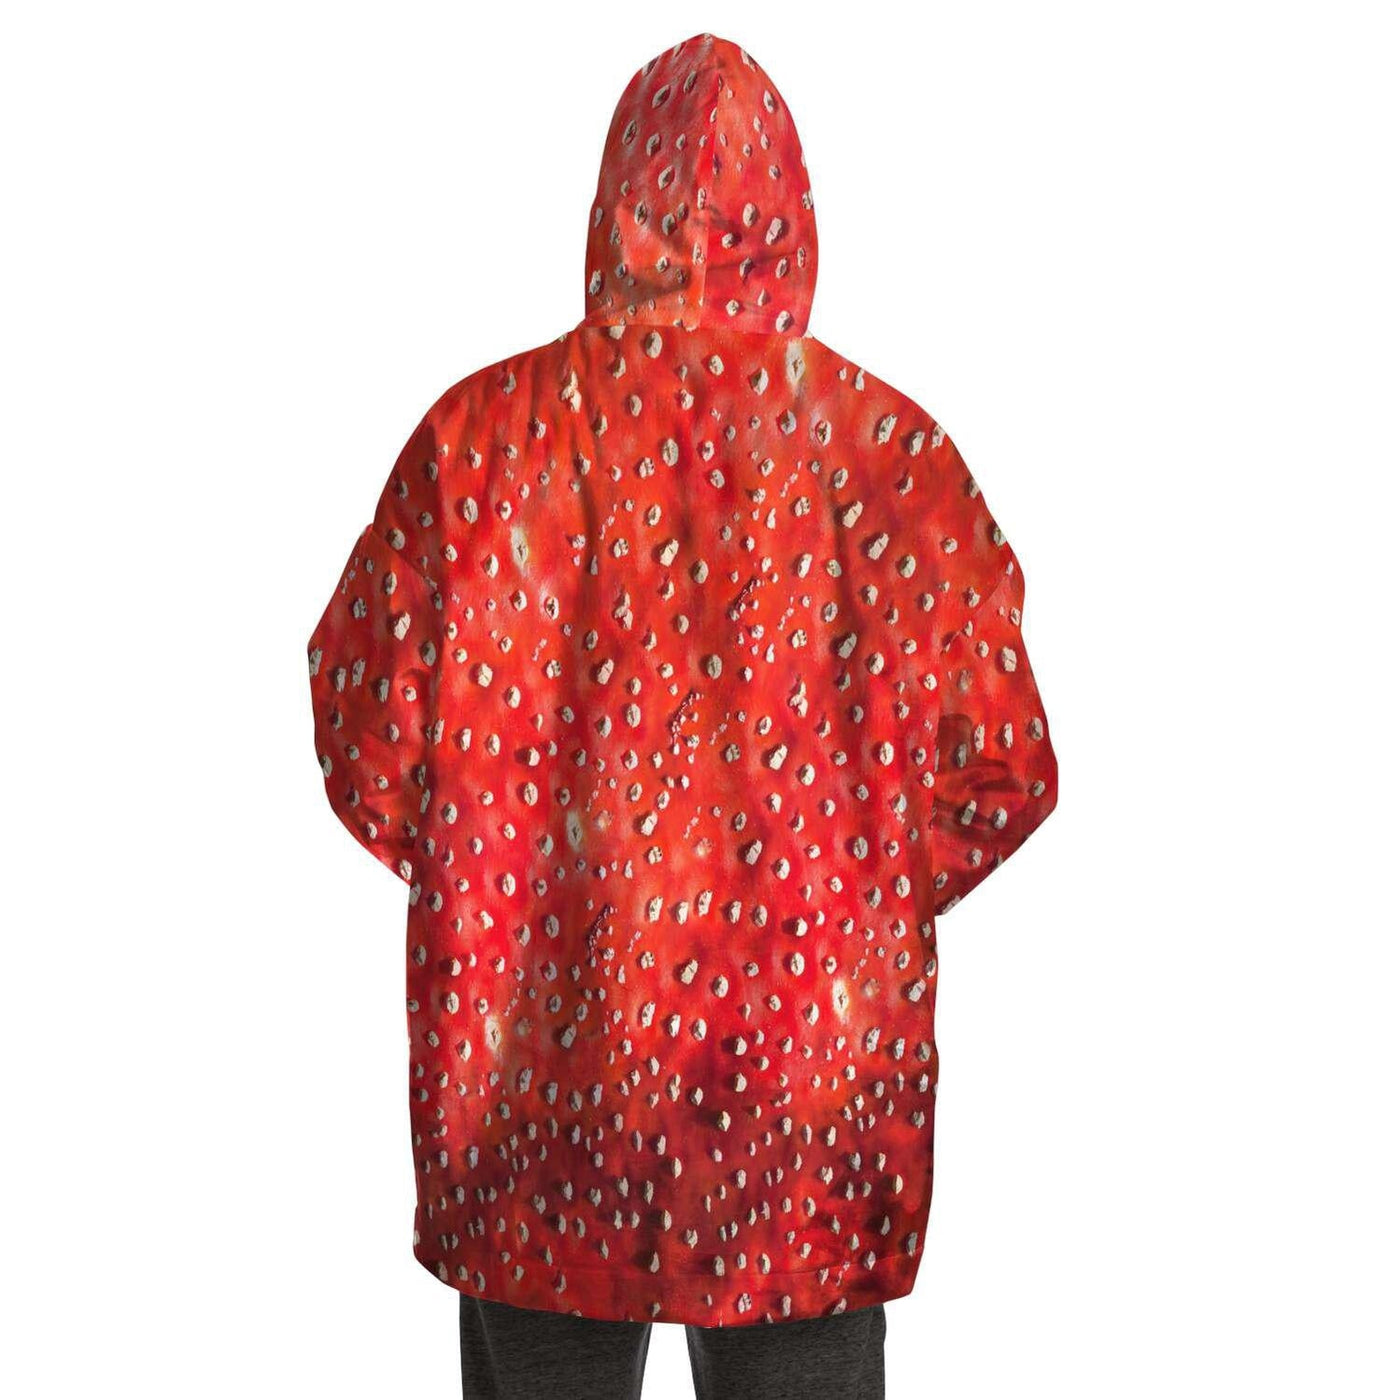 Fly Agaric Psychedelic Mushroom | Hippie Raver Snug Hoodie Coat